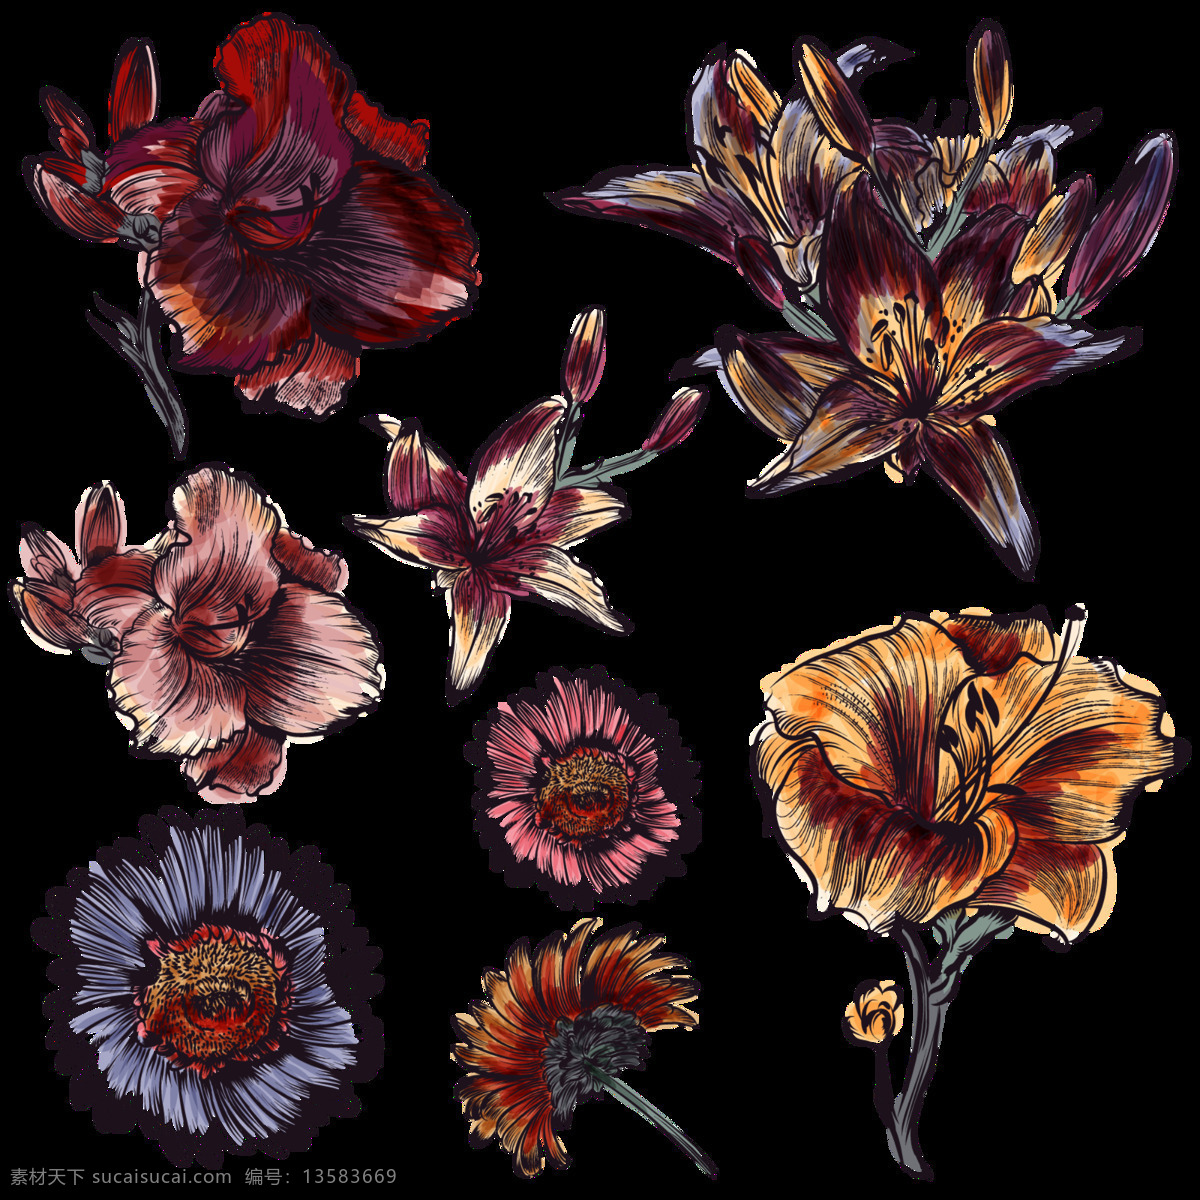 暗黑 系 深色 手绘 菊花 装饰 元素 暗黑系 花朵 植物 装饰元素